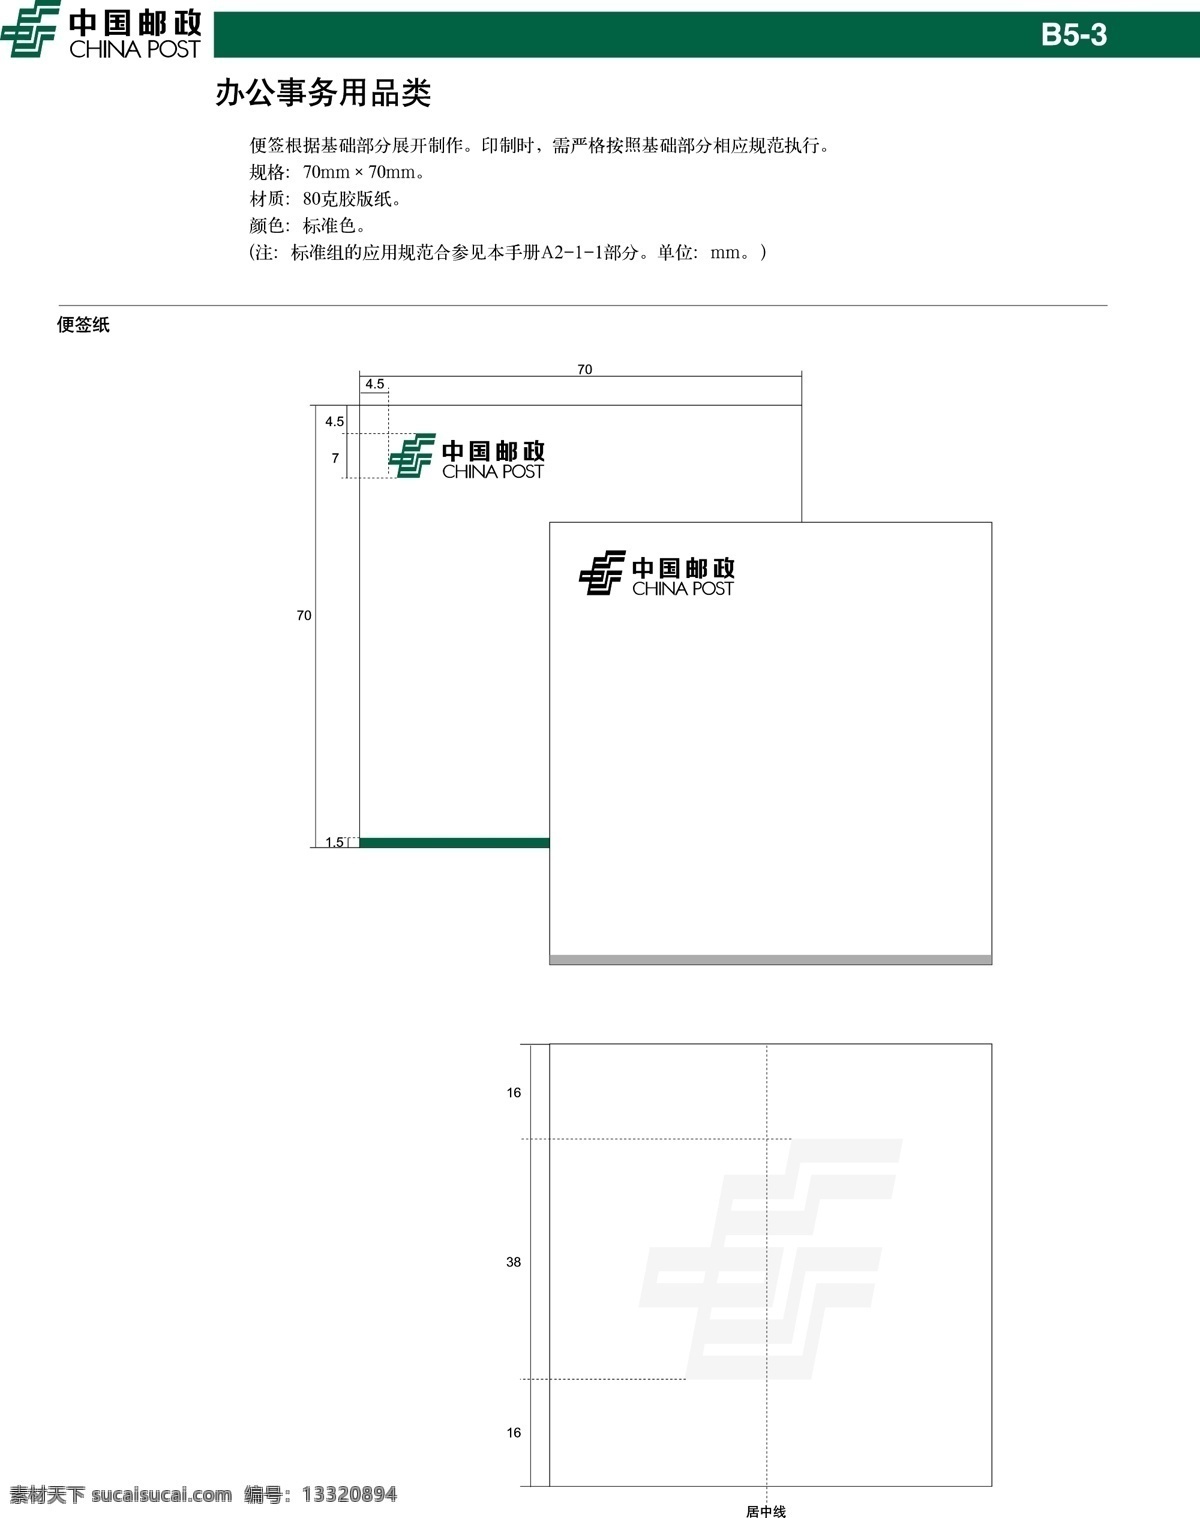 中国 邮政 便签 纸 vi设计 便签纸 模板 设计稿 素材元素 源文件 中国邮政 办公事务 用品类 矢量图